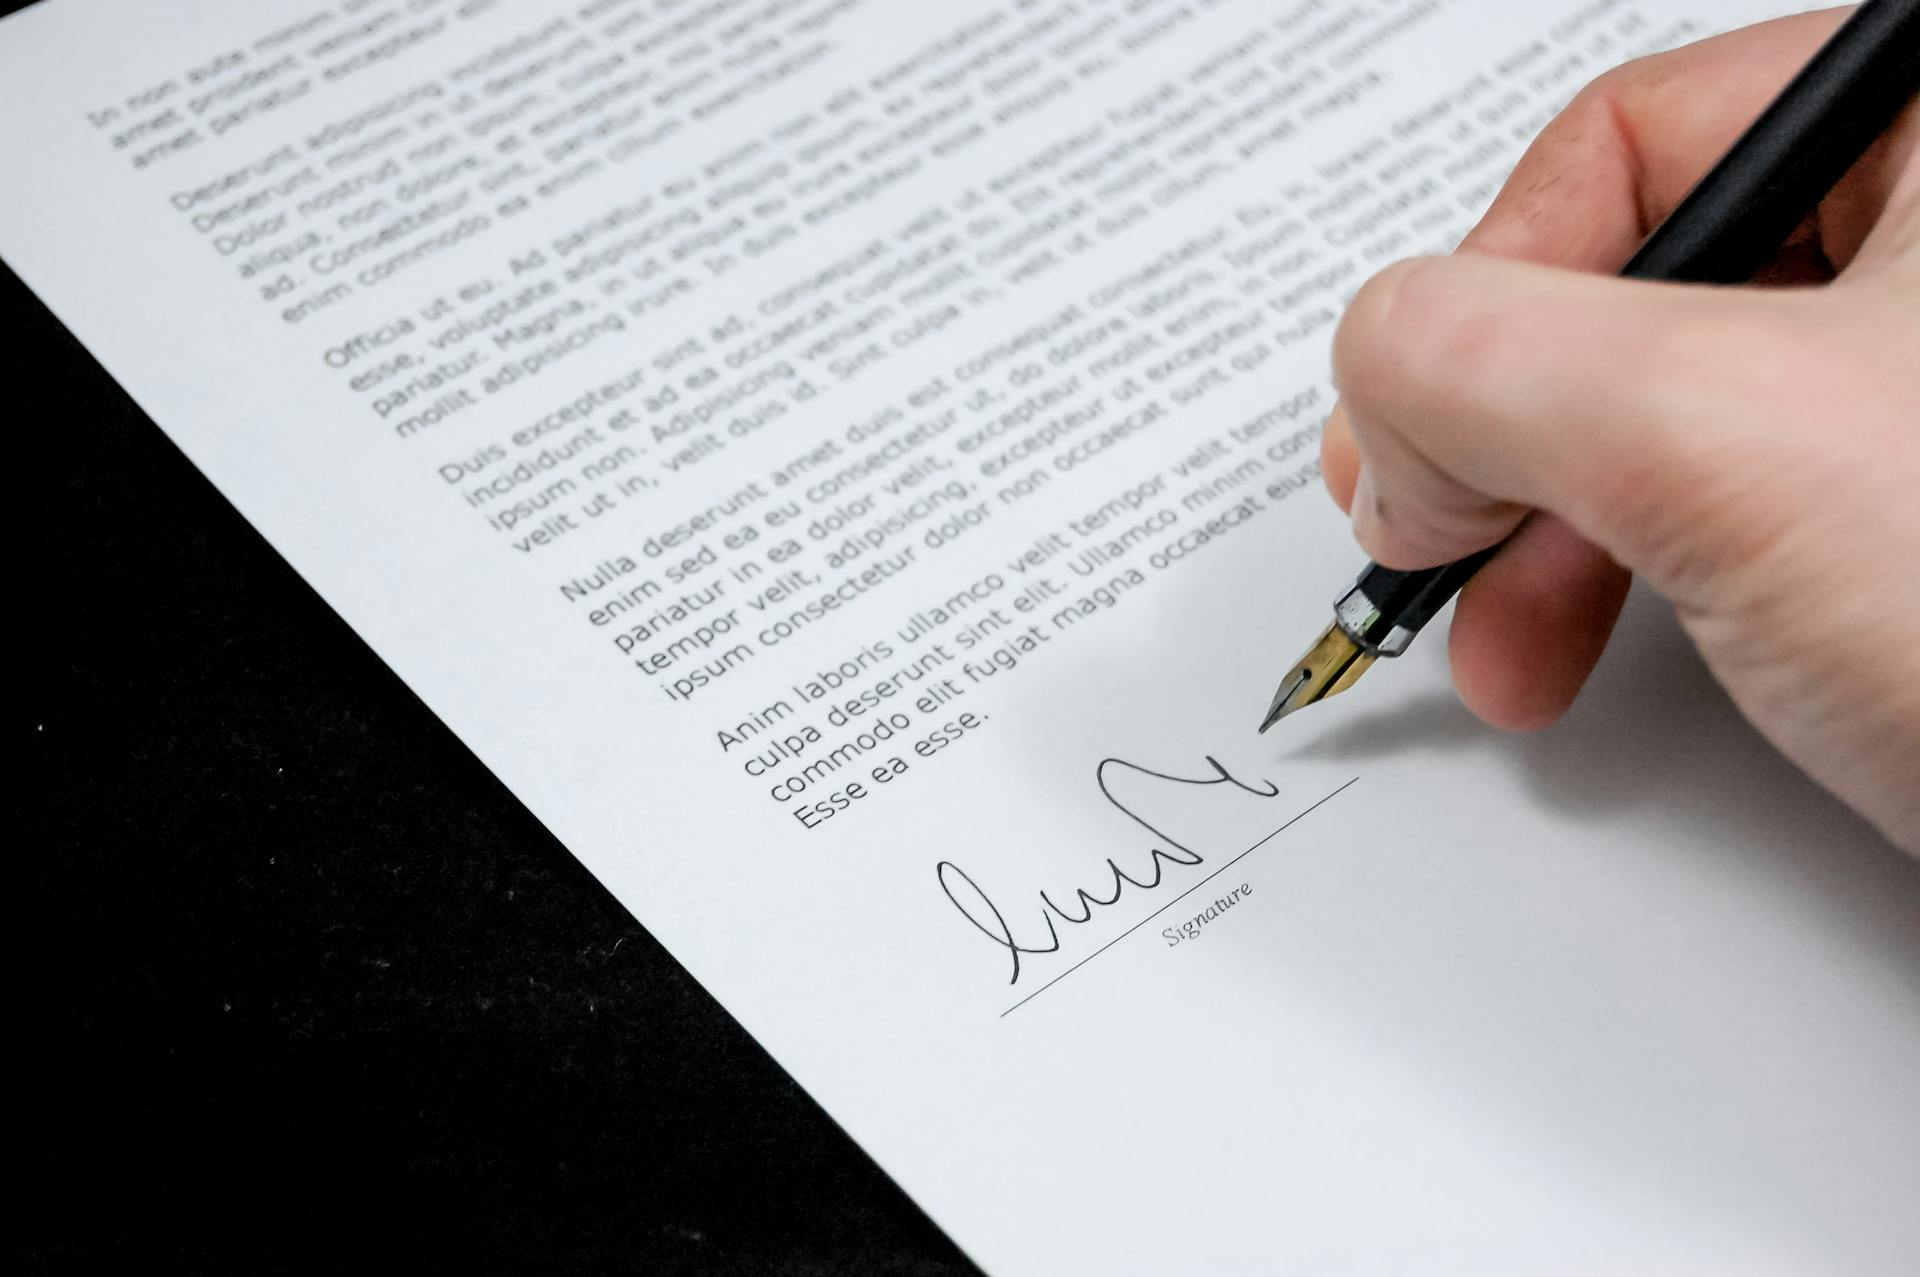 Eine Person beim Unterschreiben von Papierkram | Quelle: Pexels